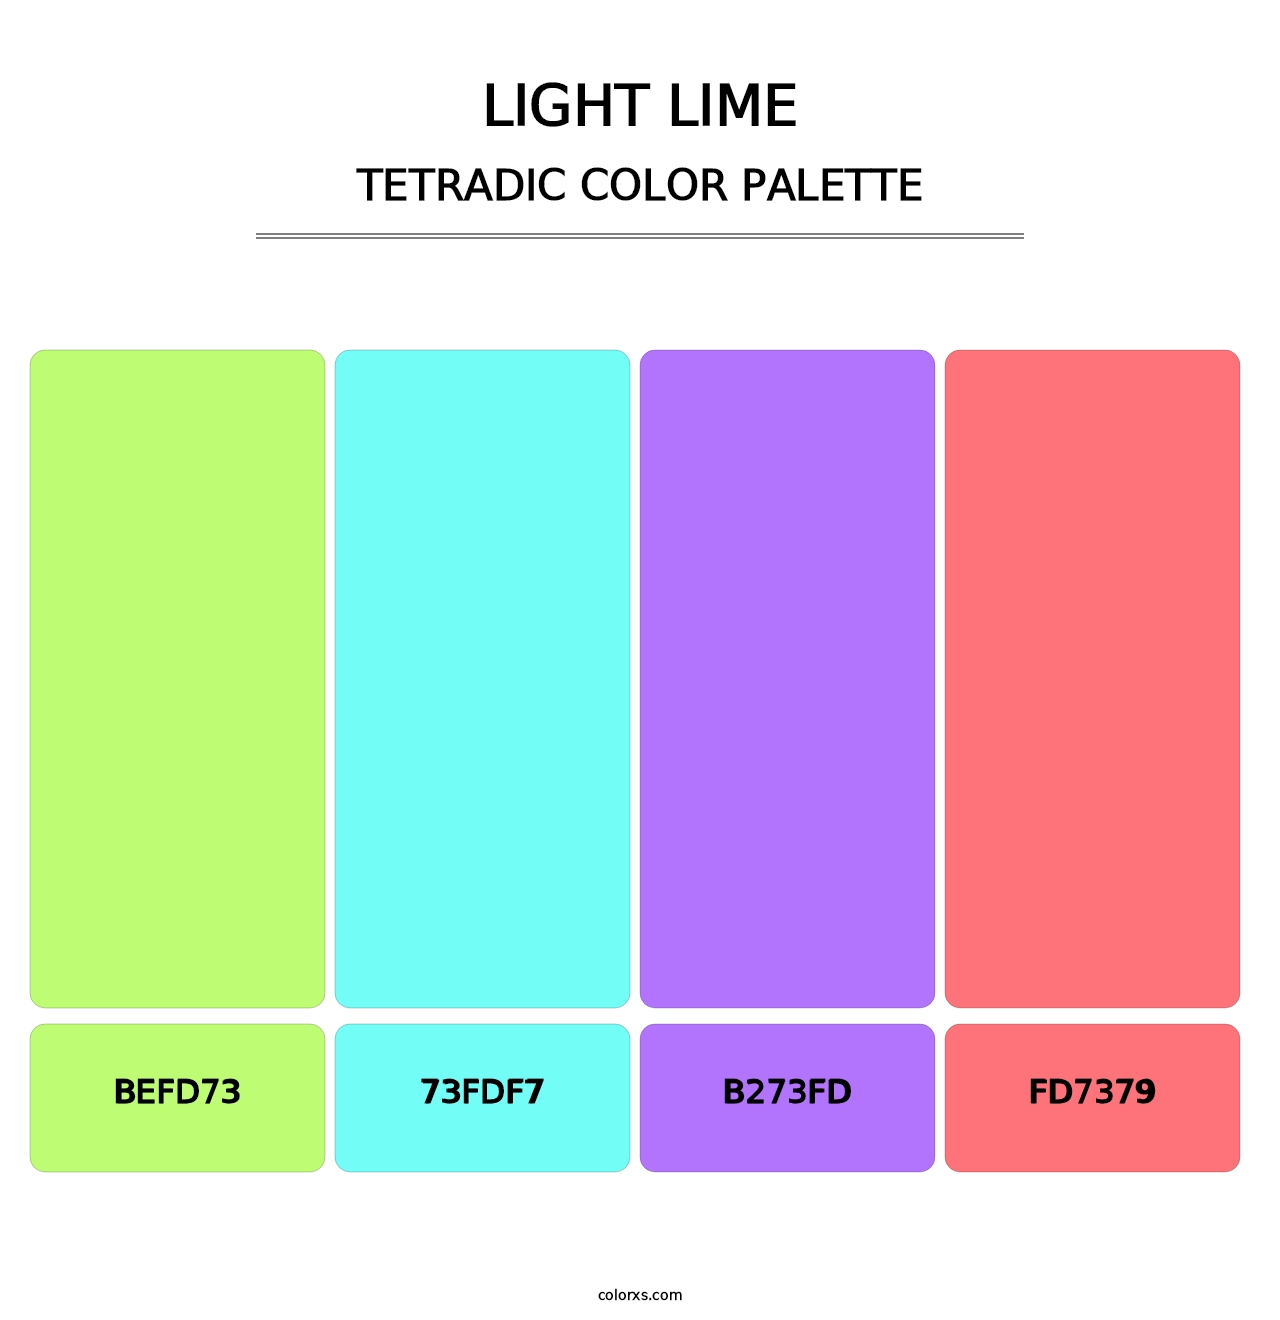 Light Lime - Tetradic Color Palette